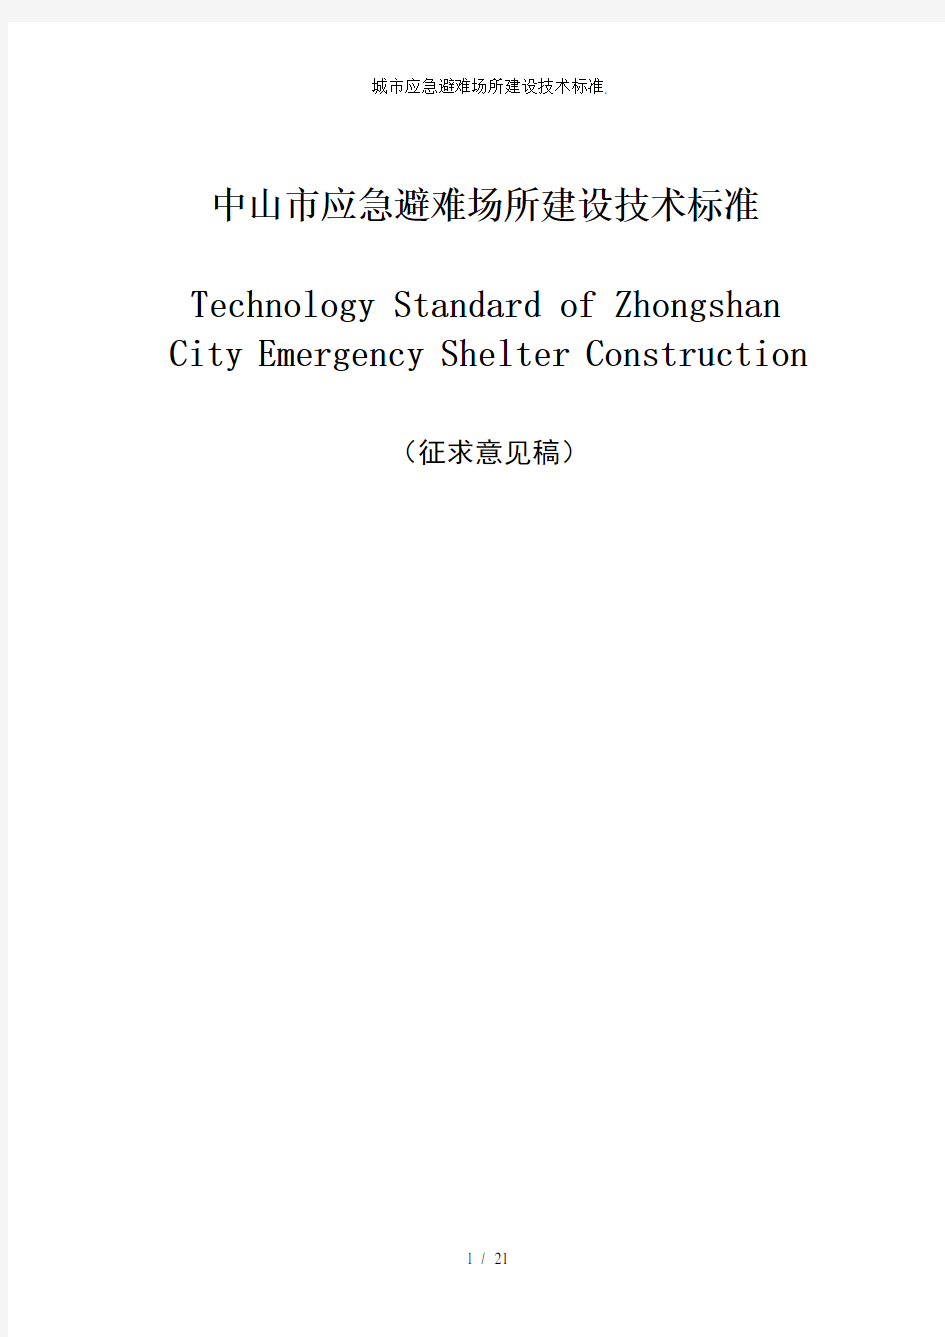 城市应急避难场所建设技术标准